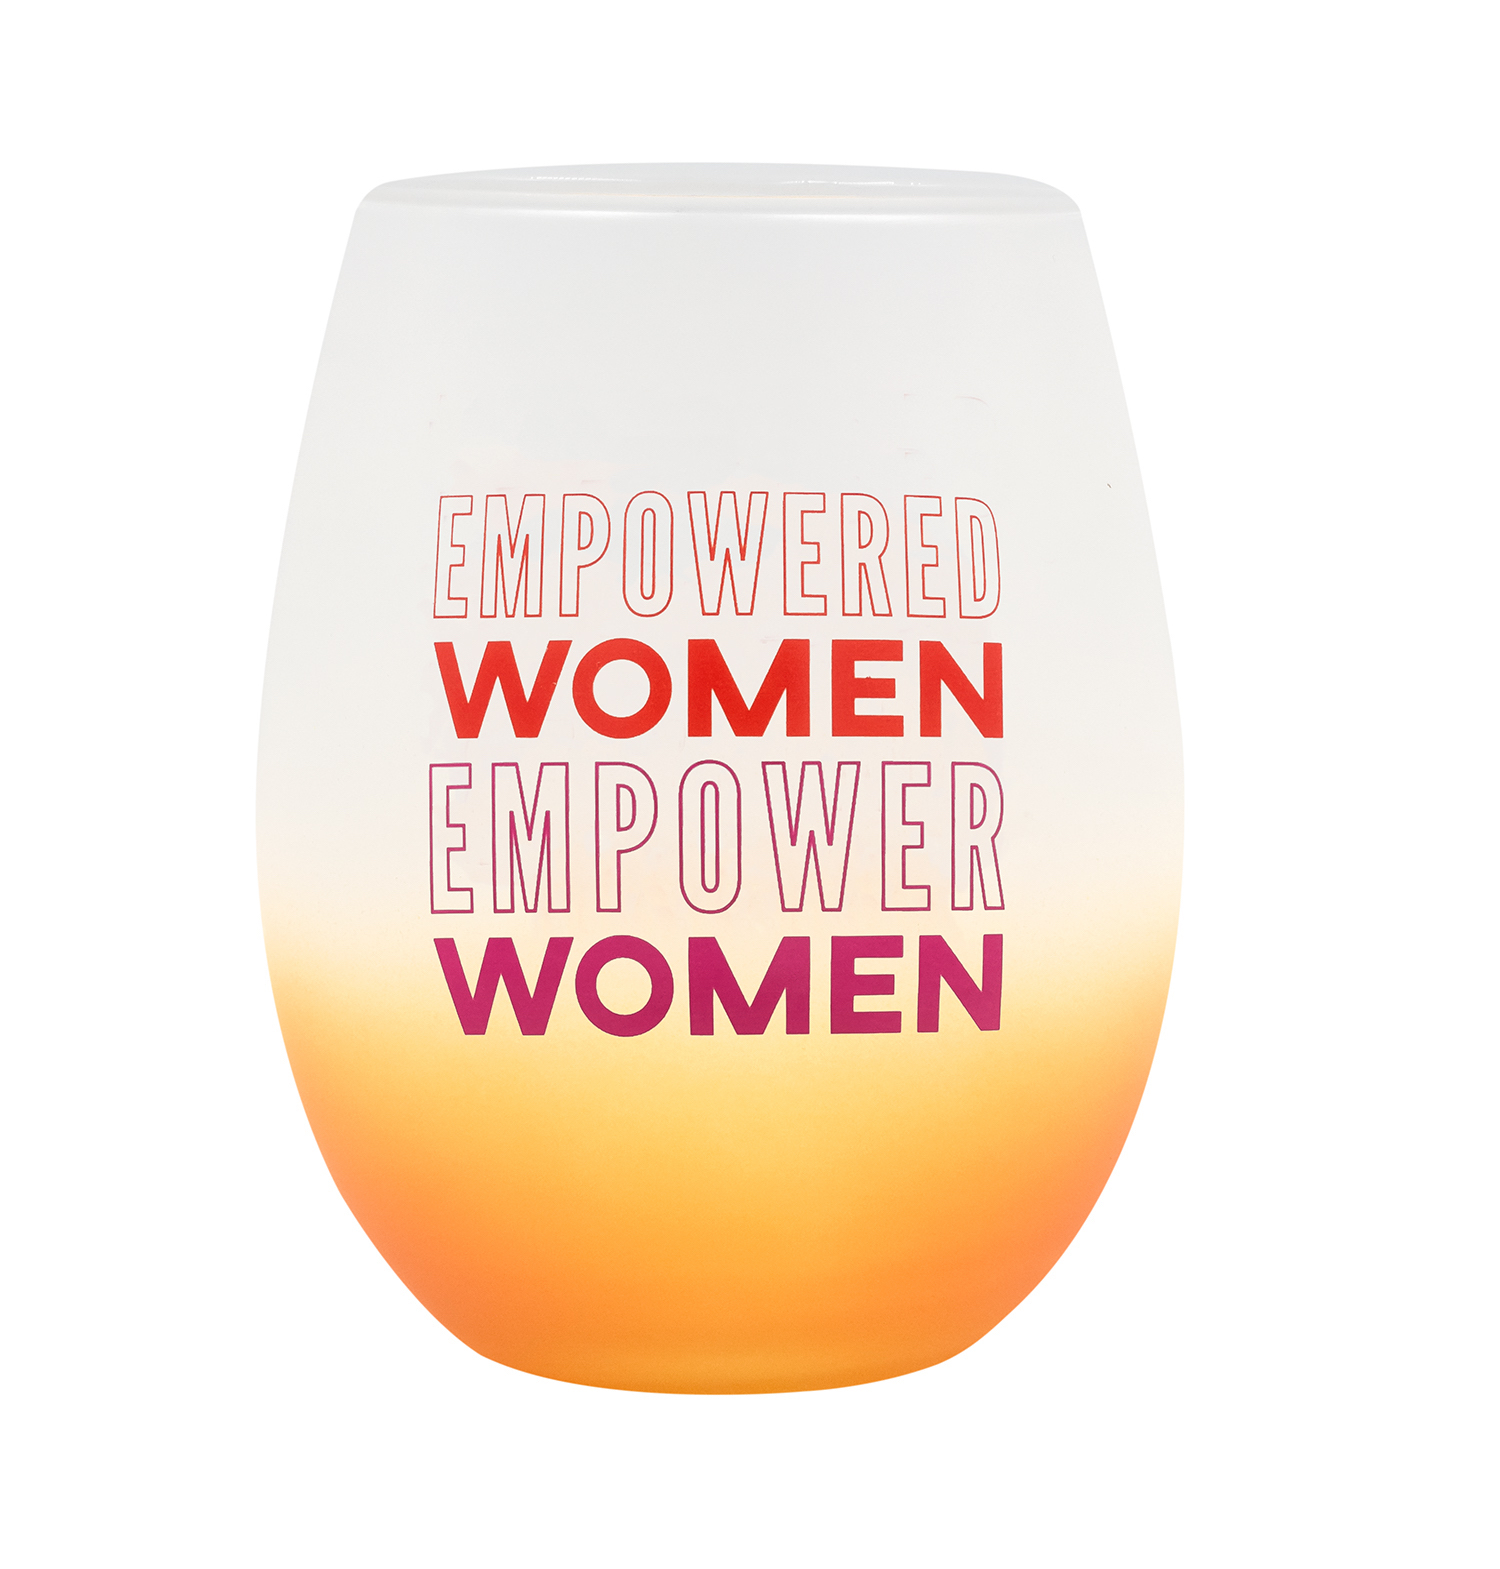 Empowered women empower women wine glass